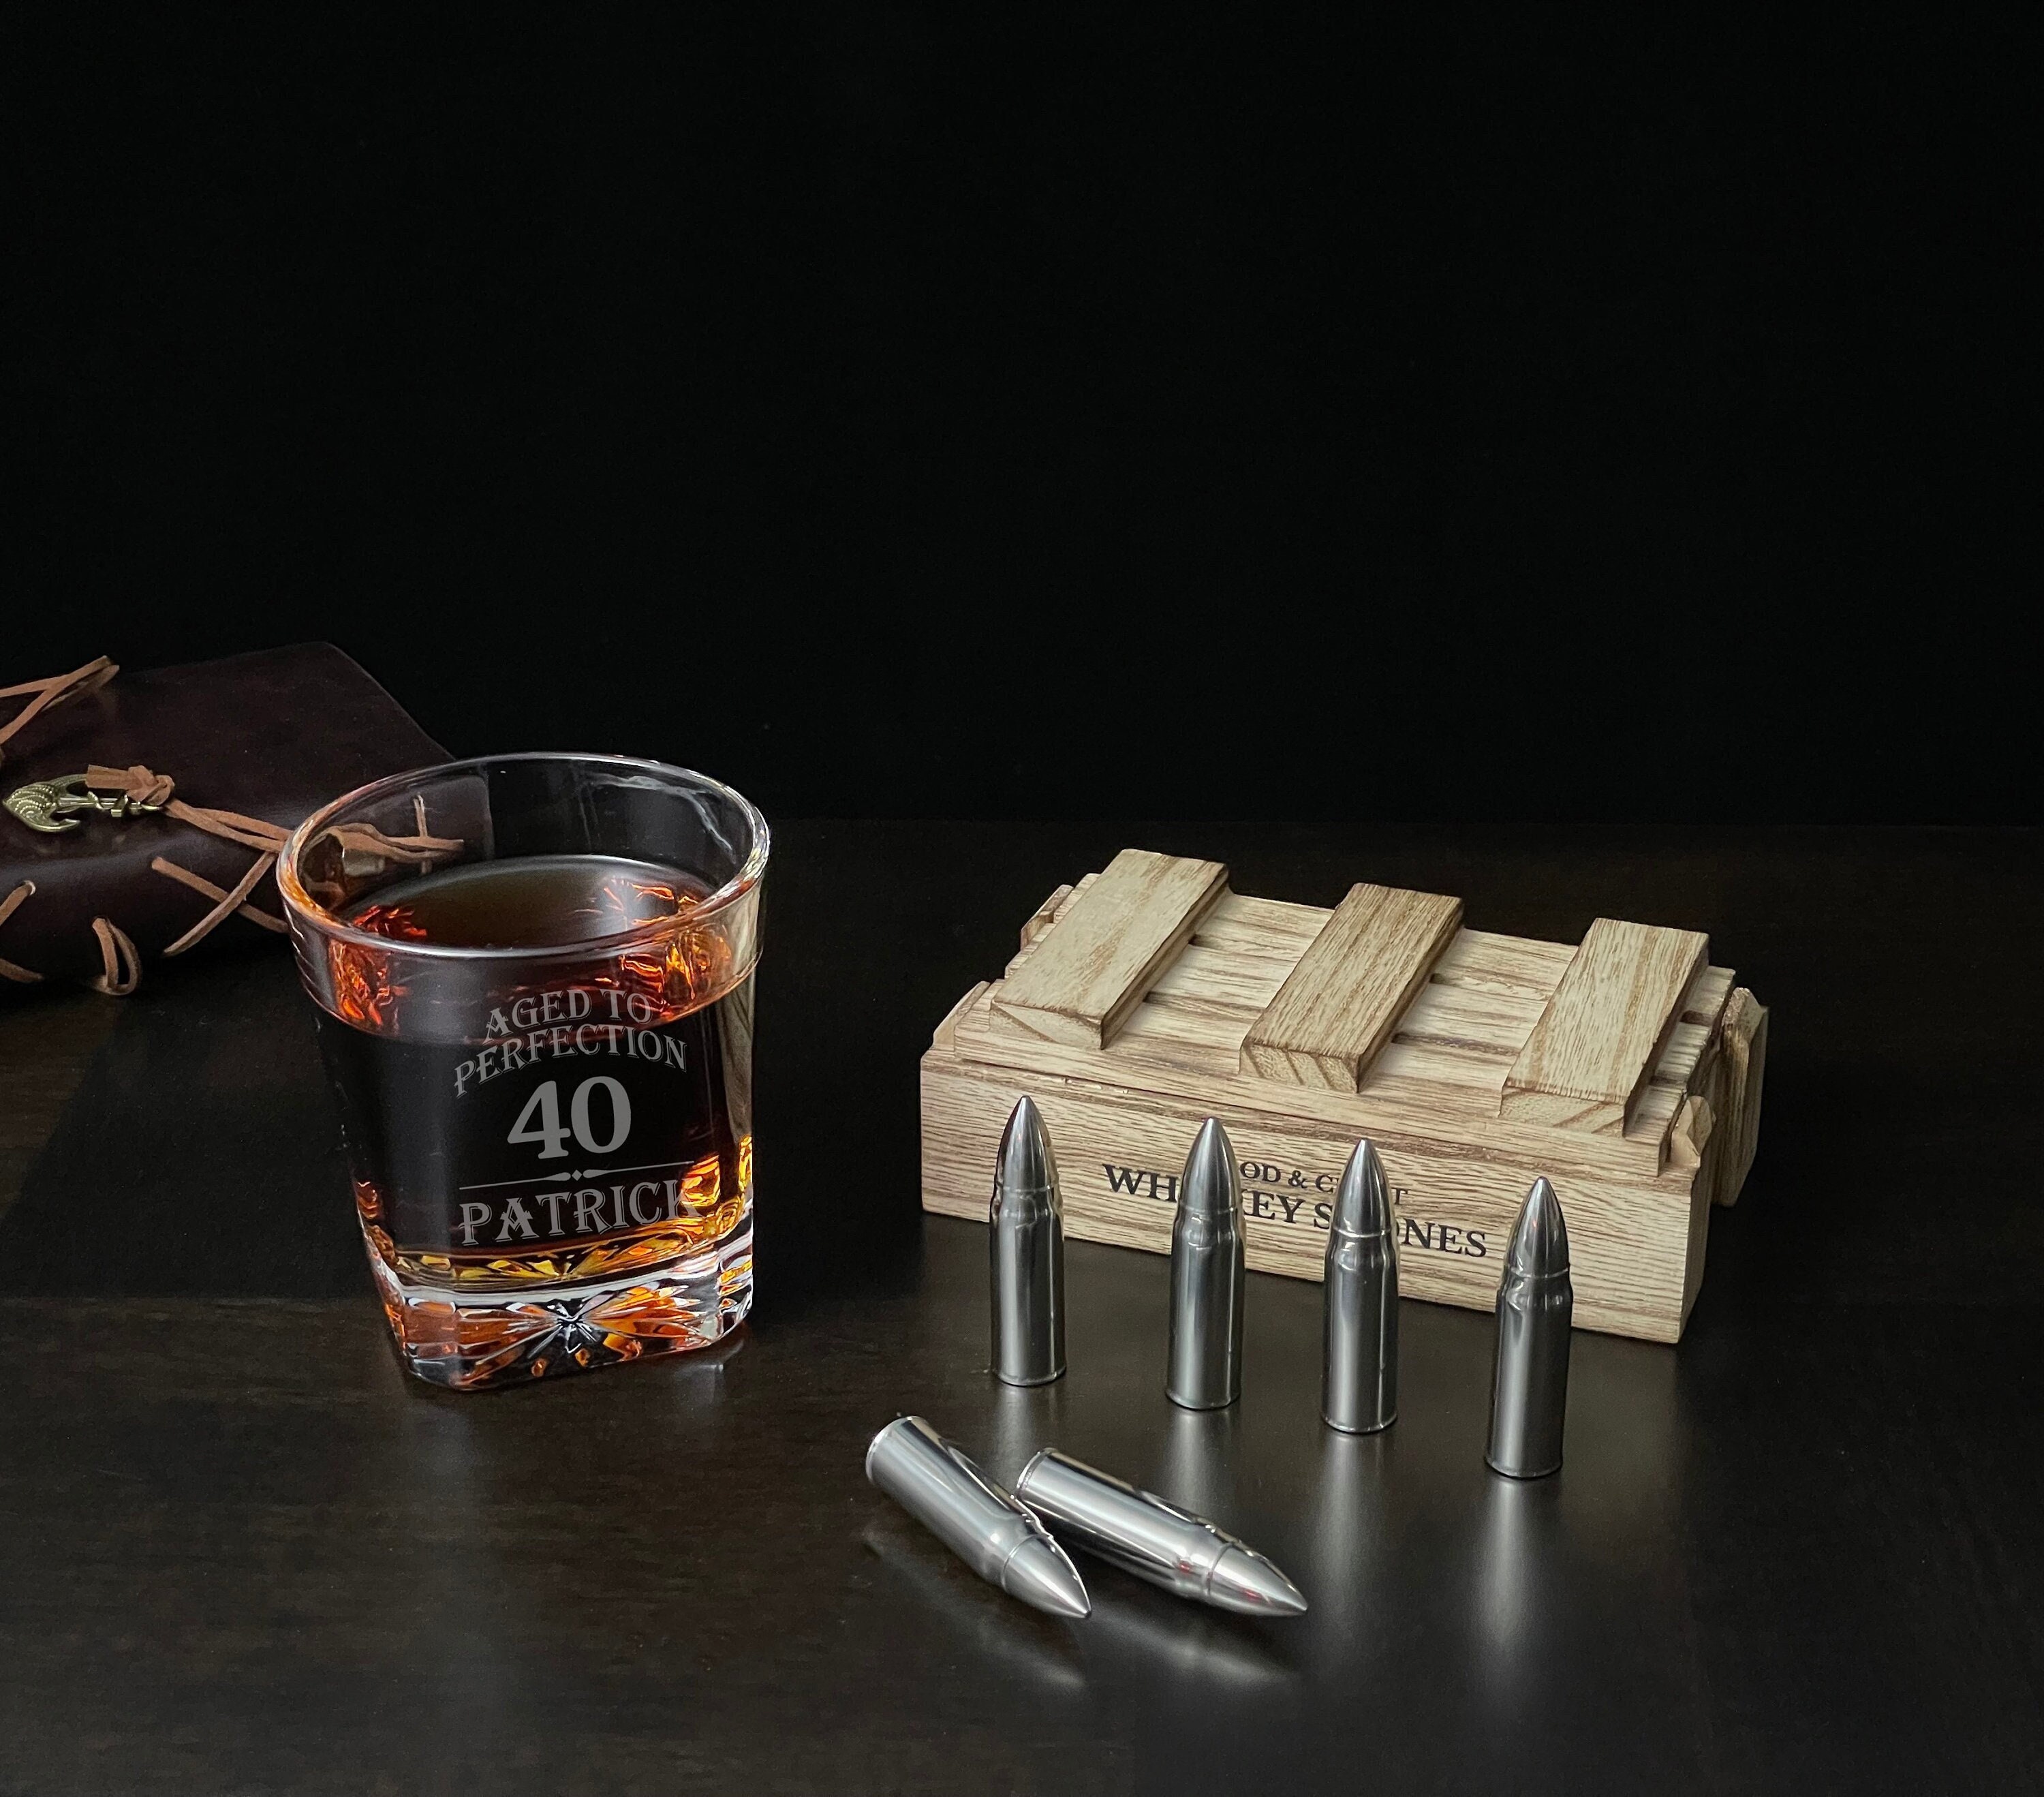 LSDZSWCYY Military Style Whiskey Bullet Stone Extra Large 6 Packs， Whi —  CHIMIYA